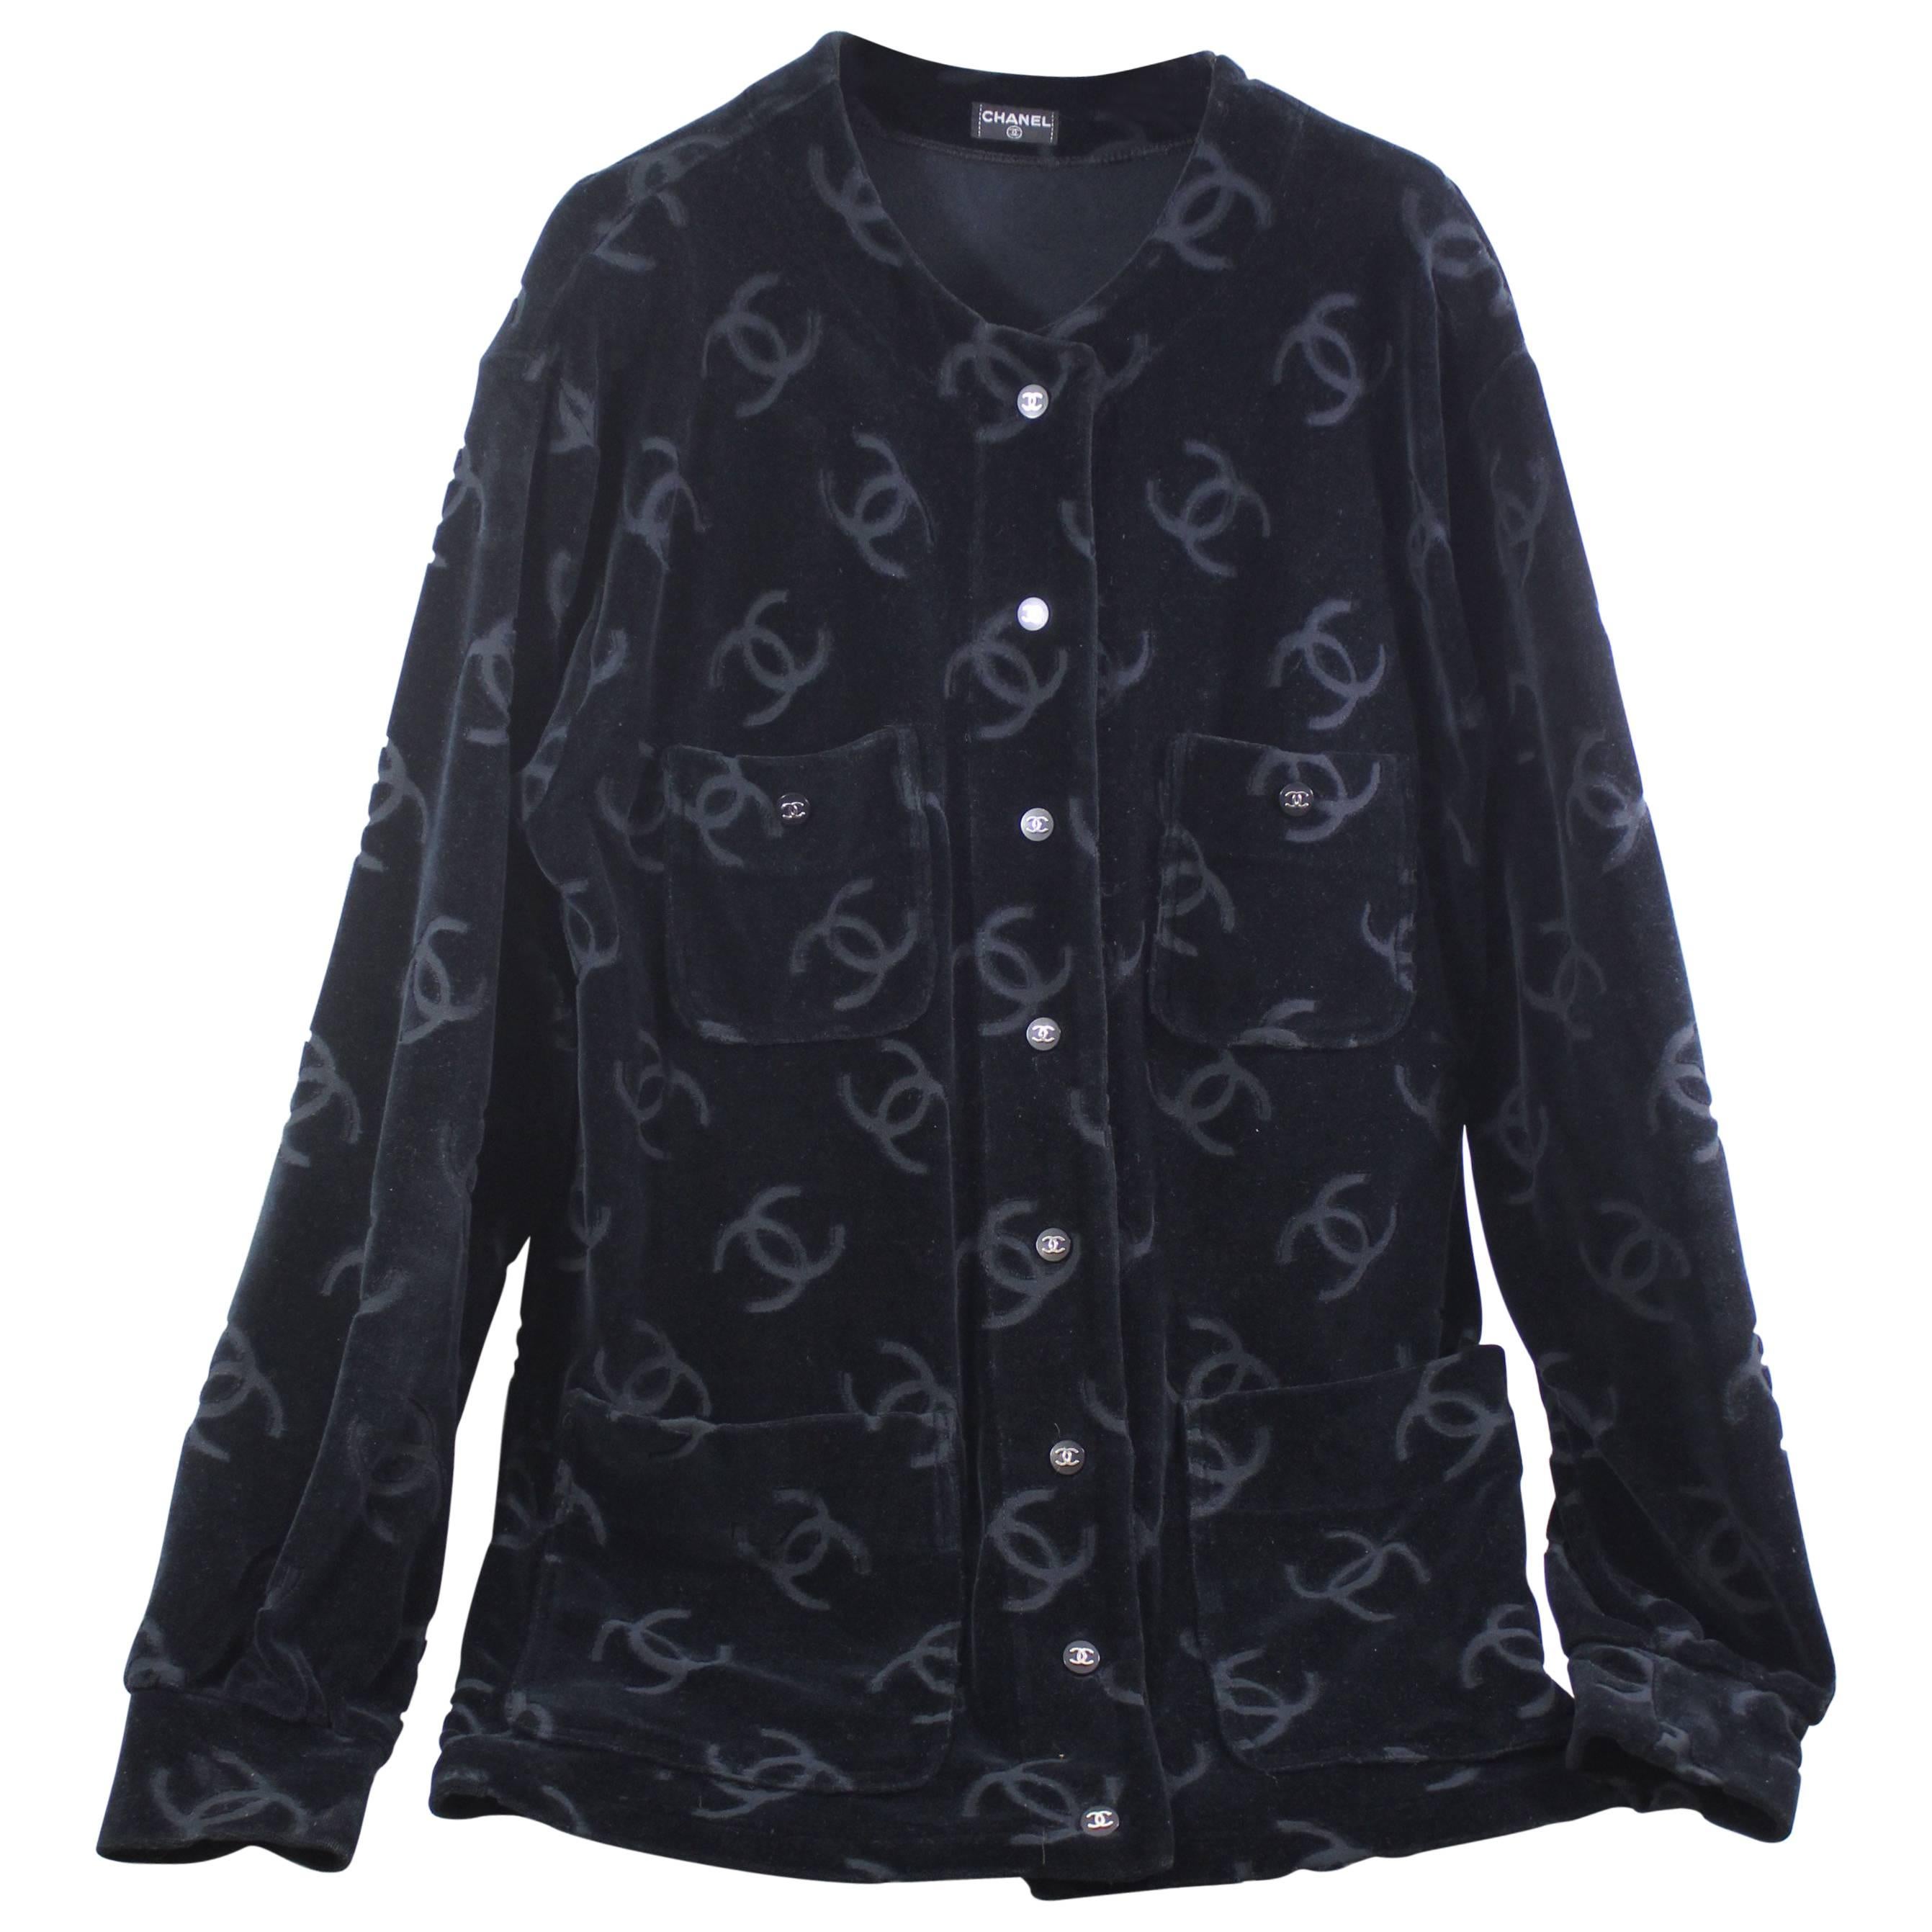 Iconic Chanel 1996 Velvet Jacket and Trouser in Black Velvet. Size 40 & 42